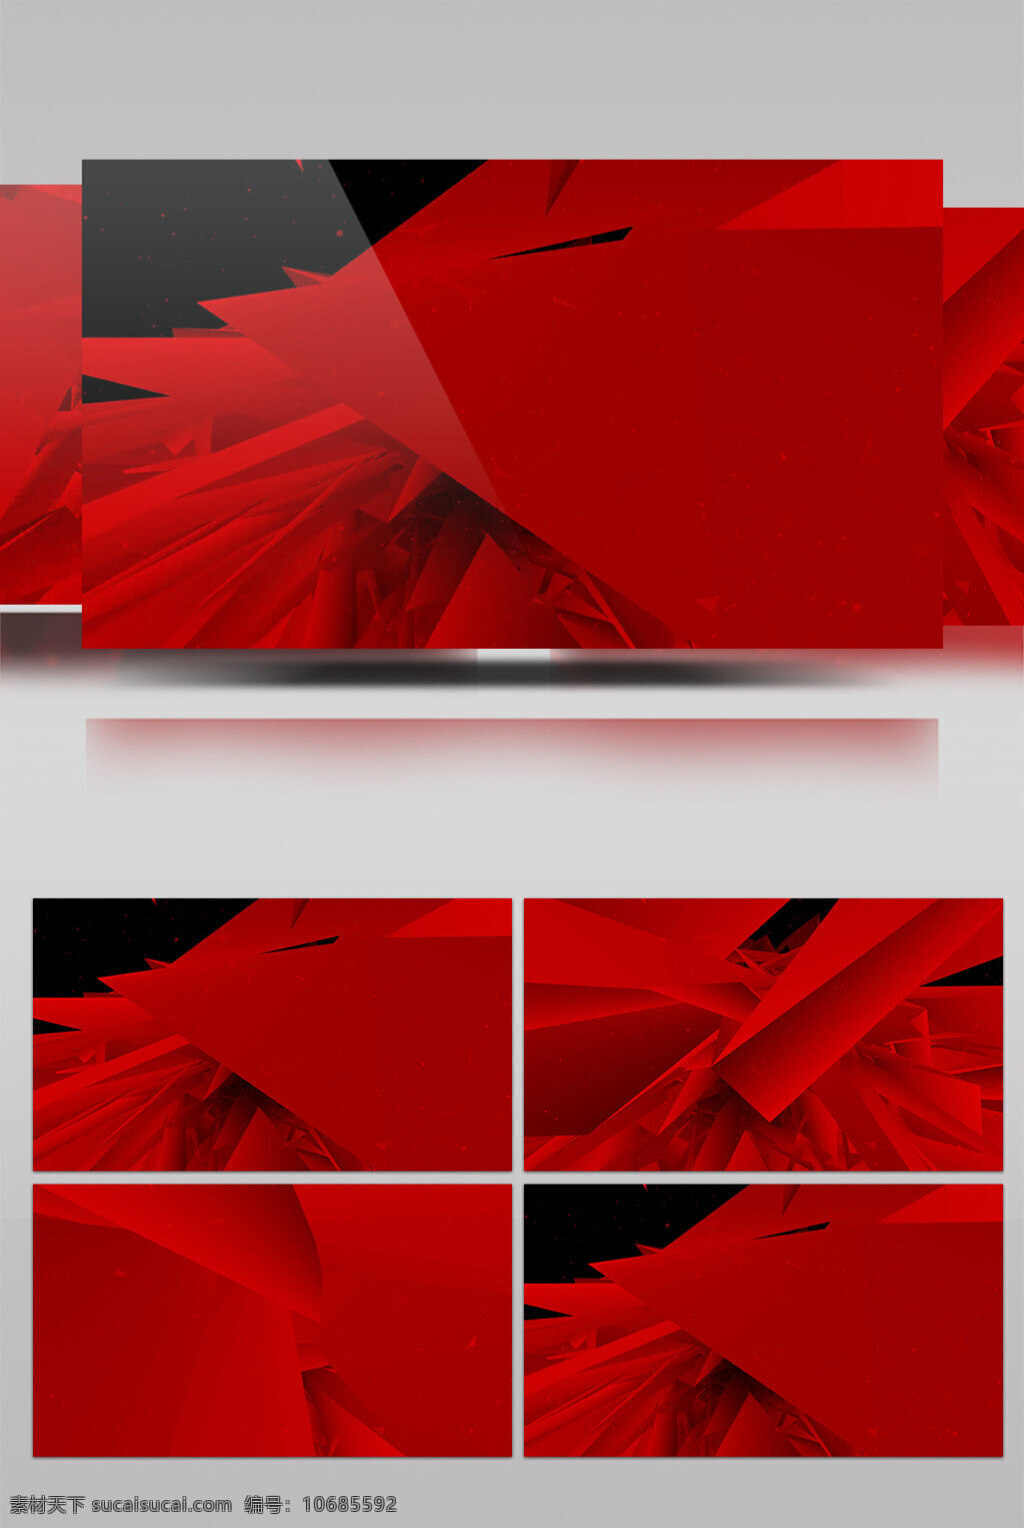 红色 布匹 动态 视频 红色布匹 生活抽象 画面意境 动态抽象 高清视频素材 特效视频素材